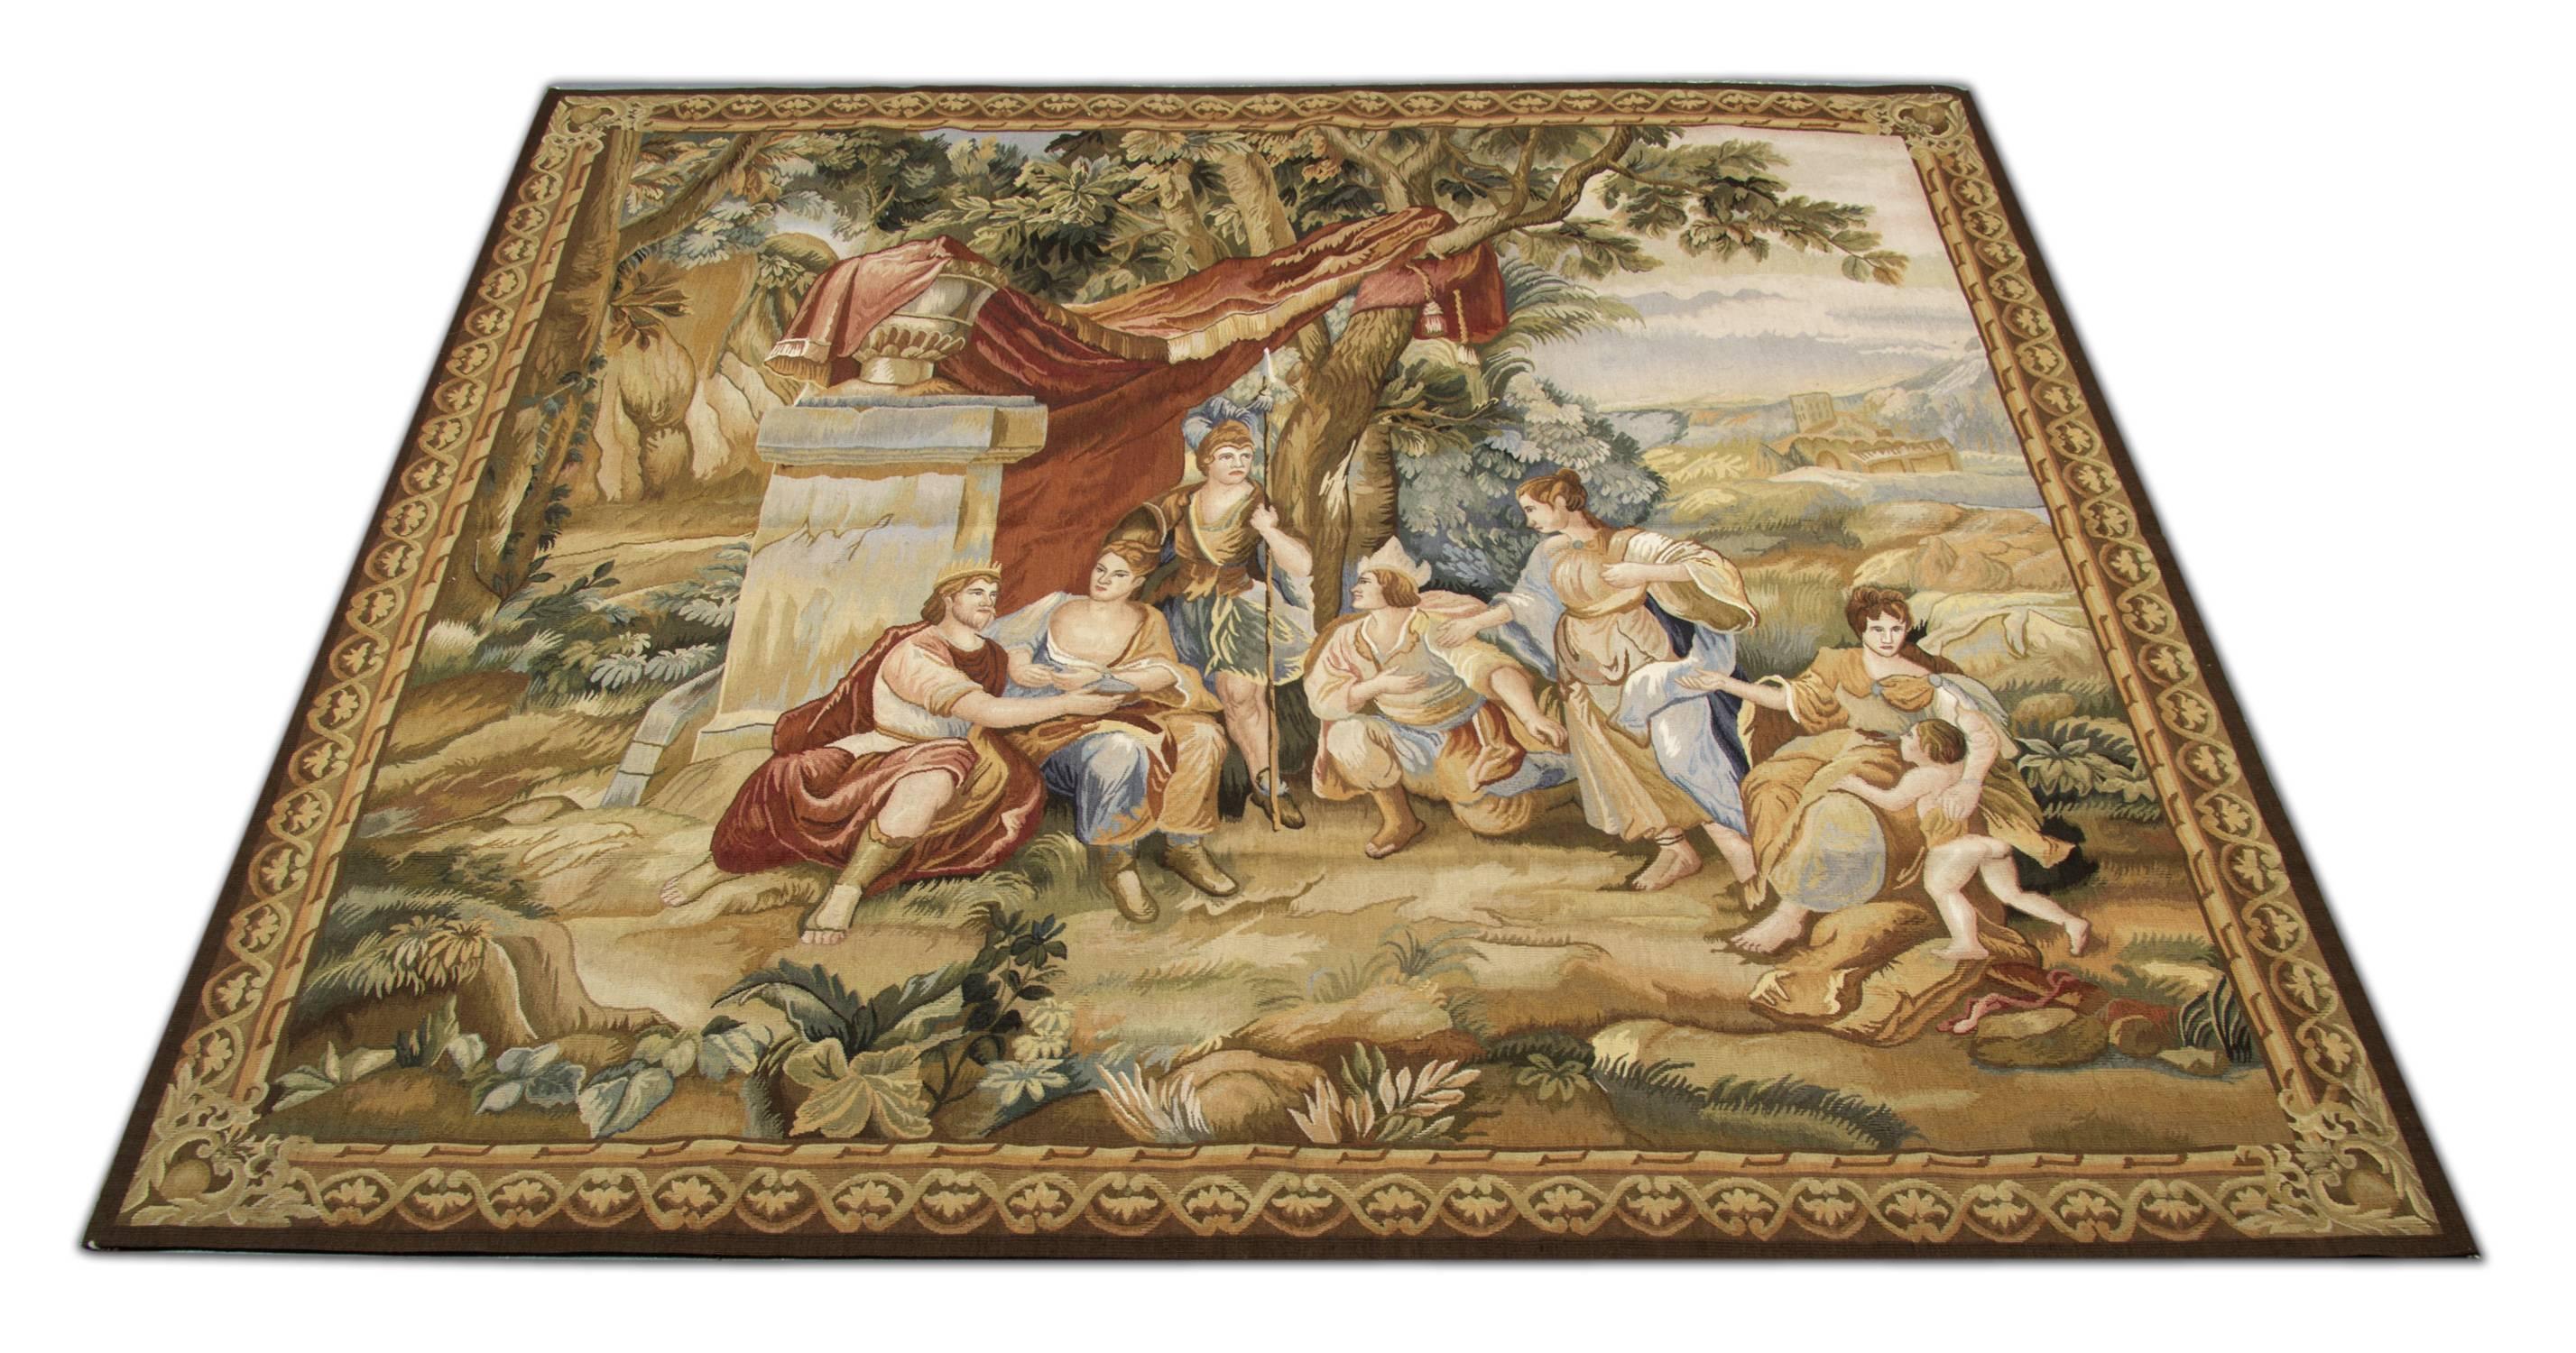 Ein fabelhafter handgewebter Wandteppich aus dem 19. Jahrhundert in ausgezeichnetem Zustand. Die Szene des Festes inmitten der Natur. Eine ähnliche Technik wird für die Herstellung von Wandteppichen verwendet, wie bei Aubusson und Needlepoint in der